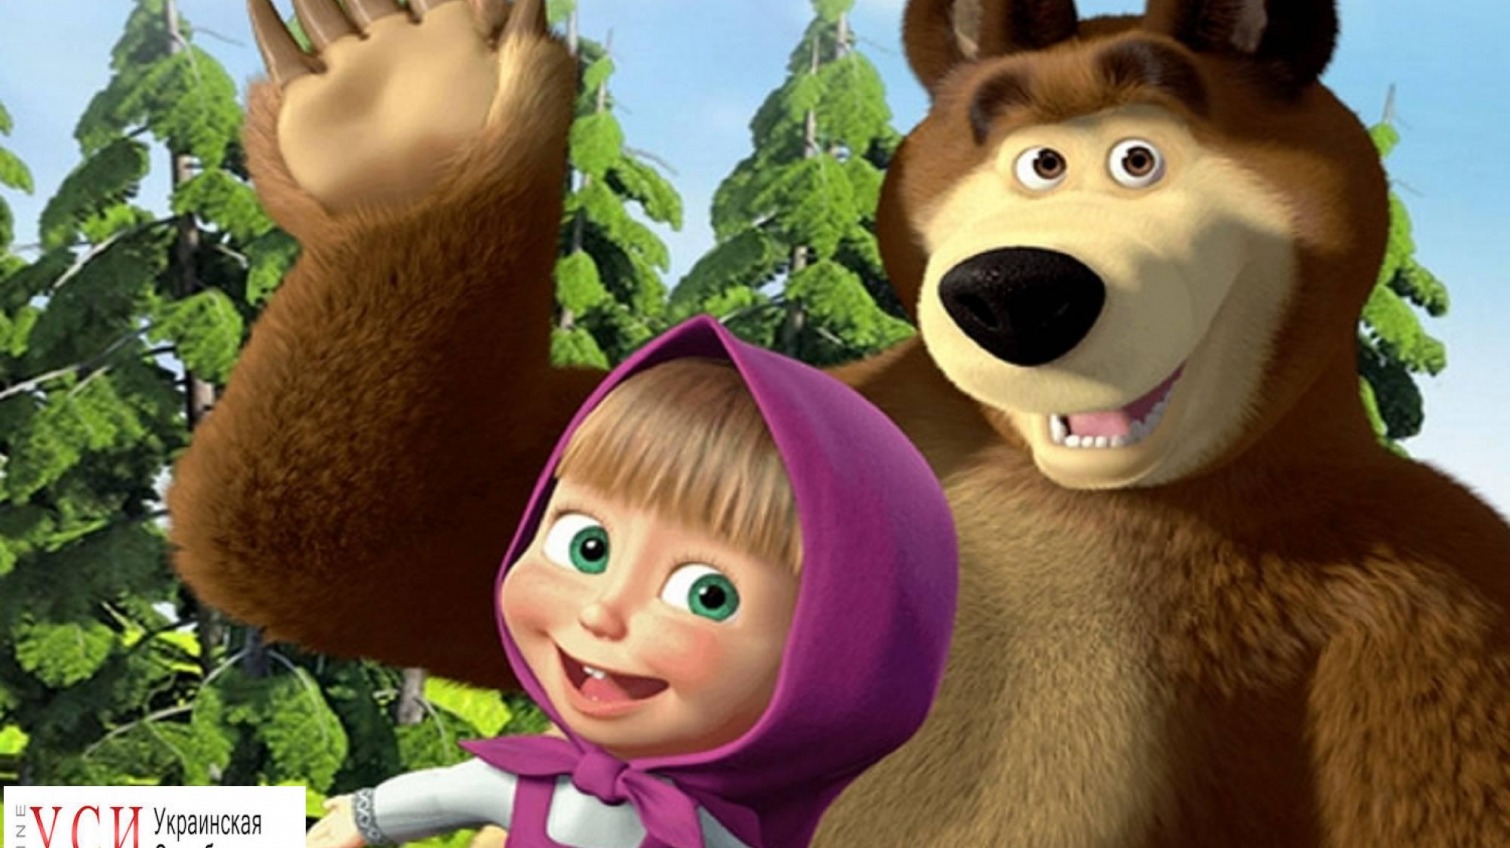 Одесские активисты требуют запретить мультфильм “Маша и Медведь” «фото»